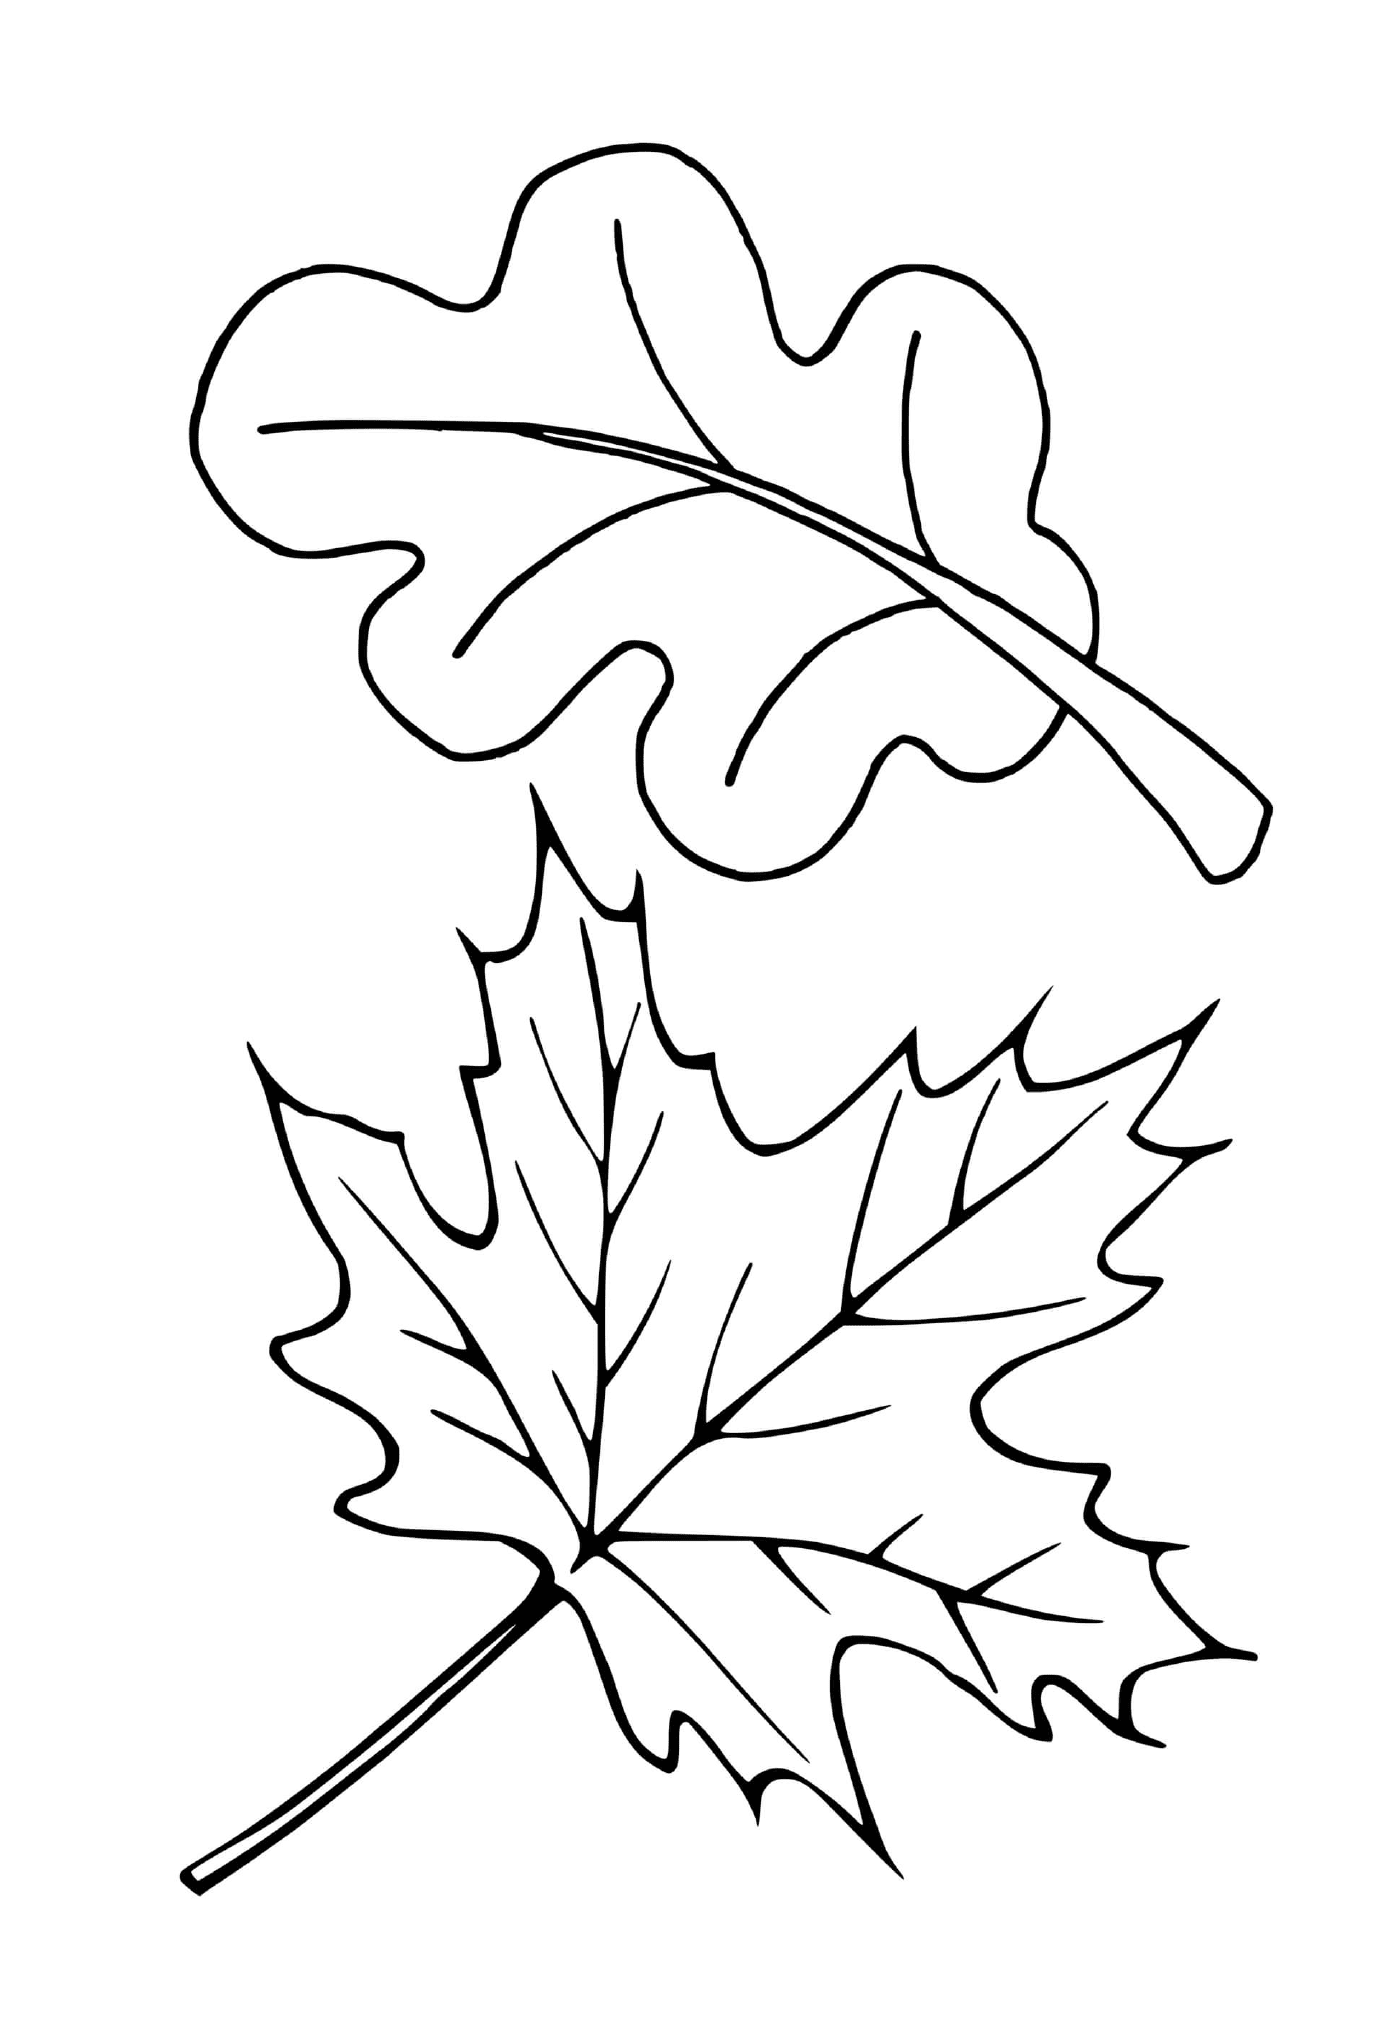  Zwei verschiedene Blätter von Bäumen (rot, Eiche) 